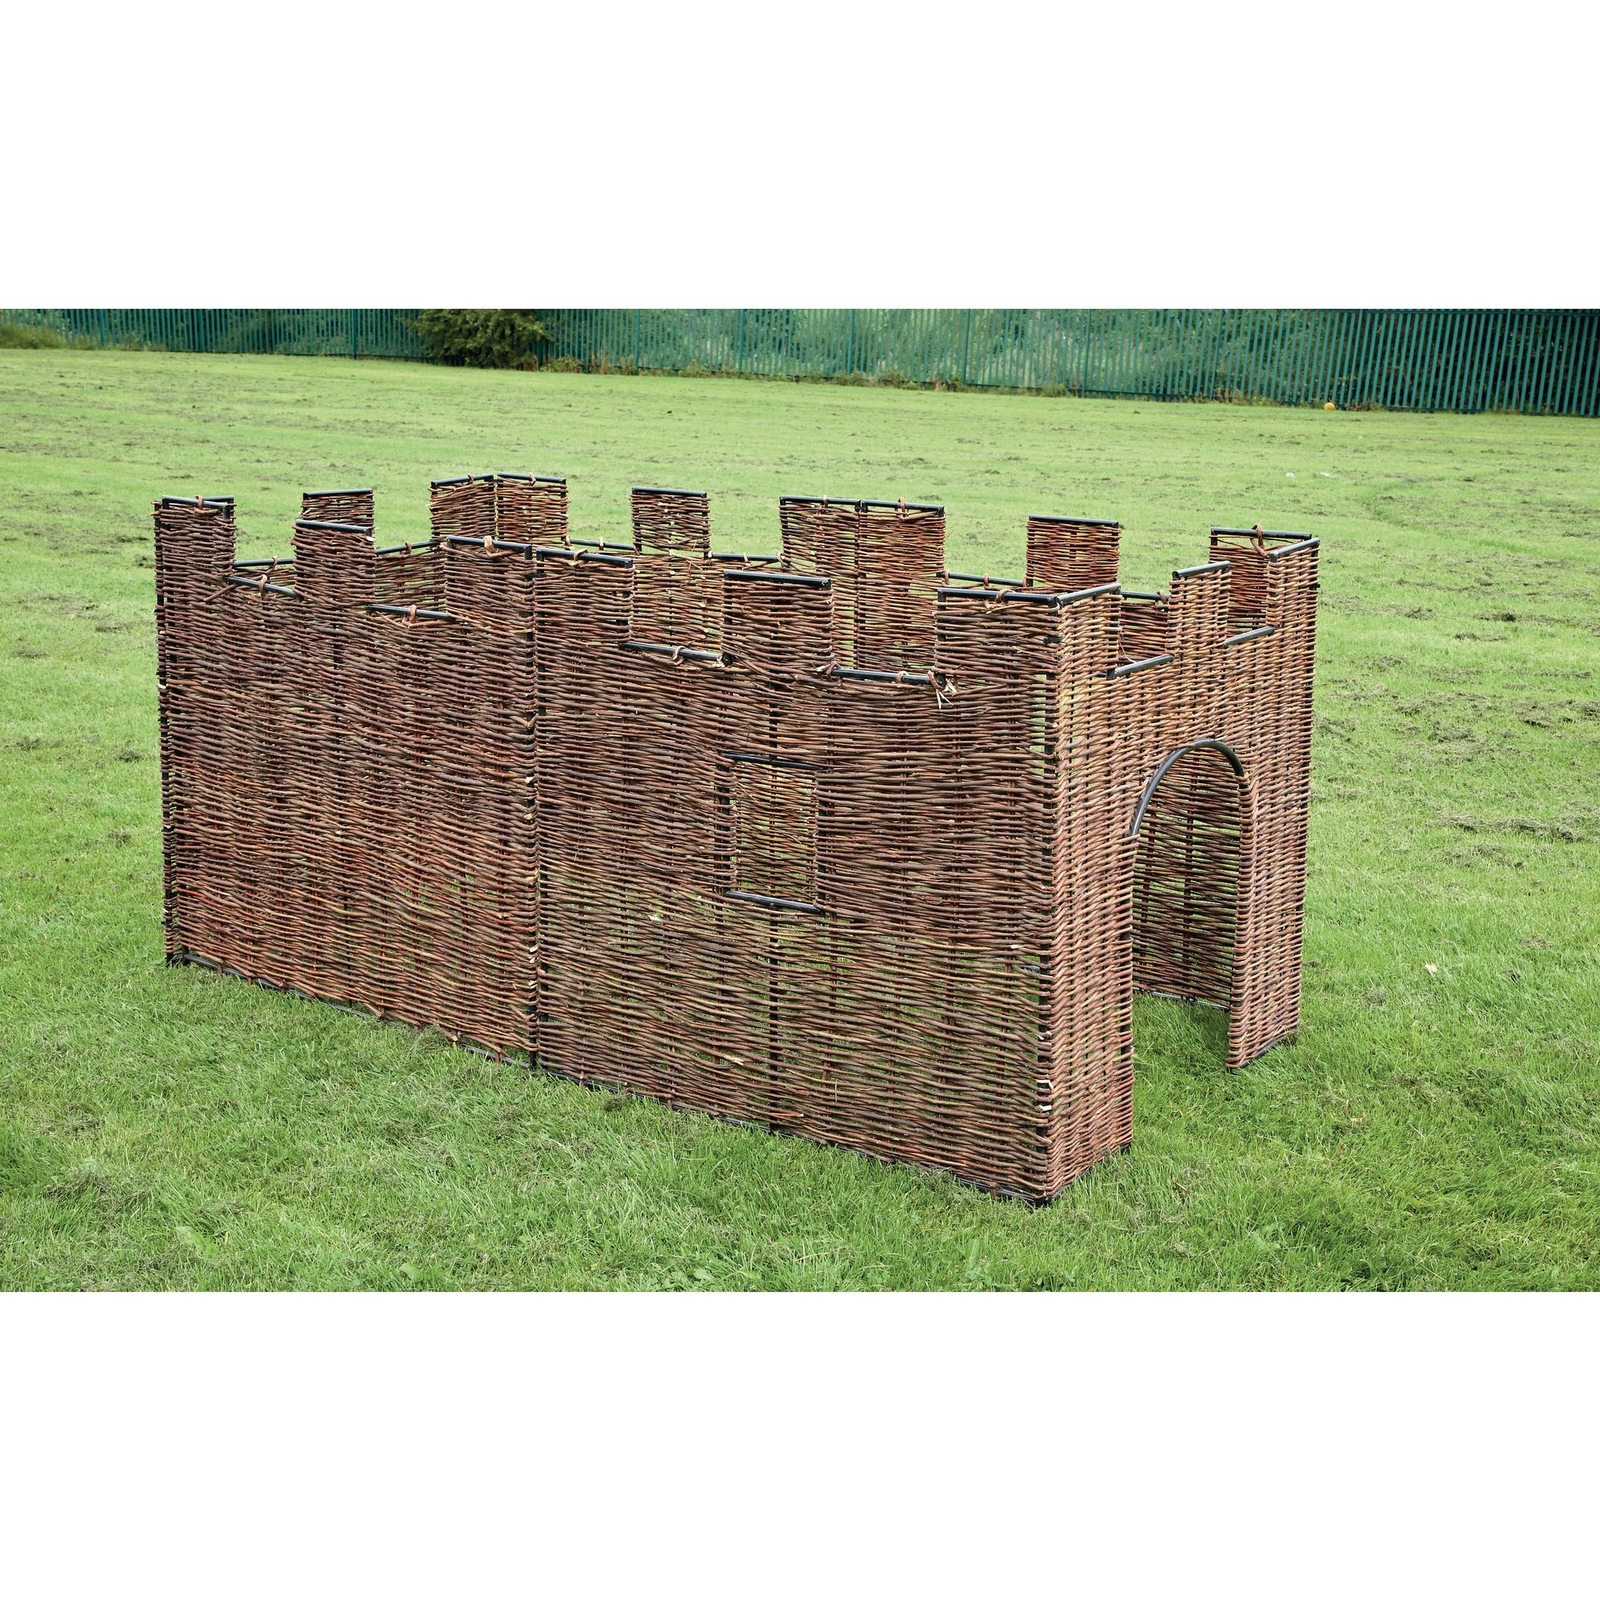 Castle Panels - 6 turret